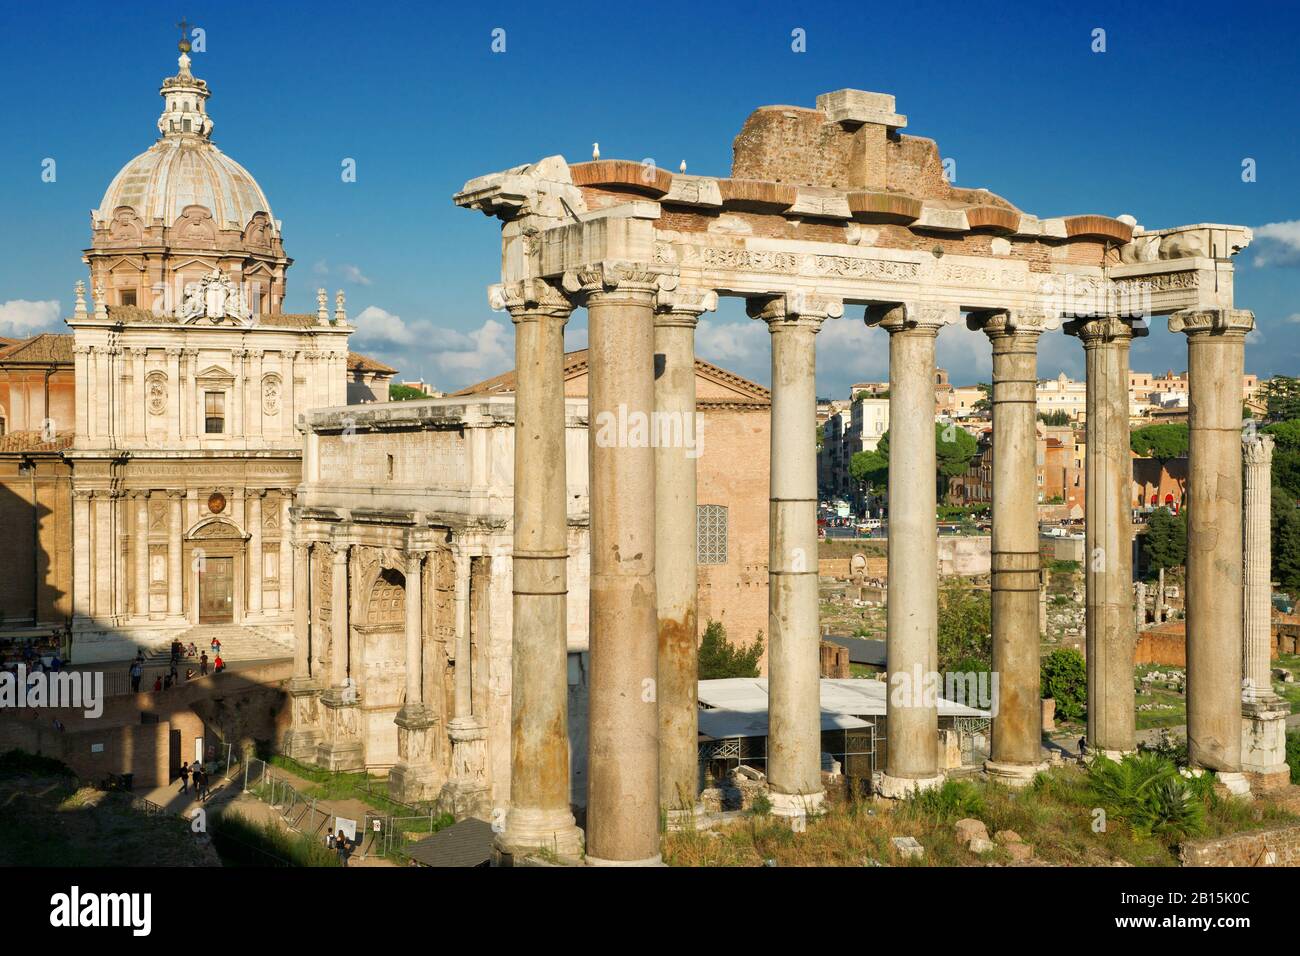 Les colonnes du Temple de Saturne, de l'Arche de Sptimius Severus et de l'église médiévale du Forum romain, Rome, Italie Banque D'Images